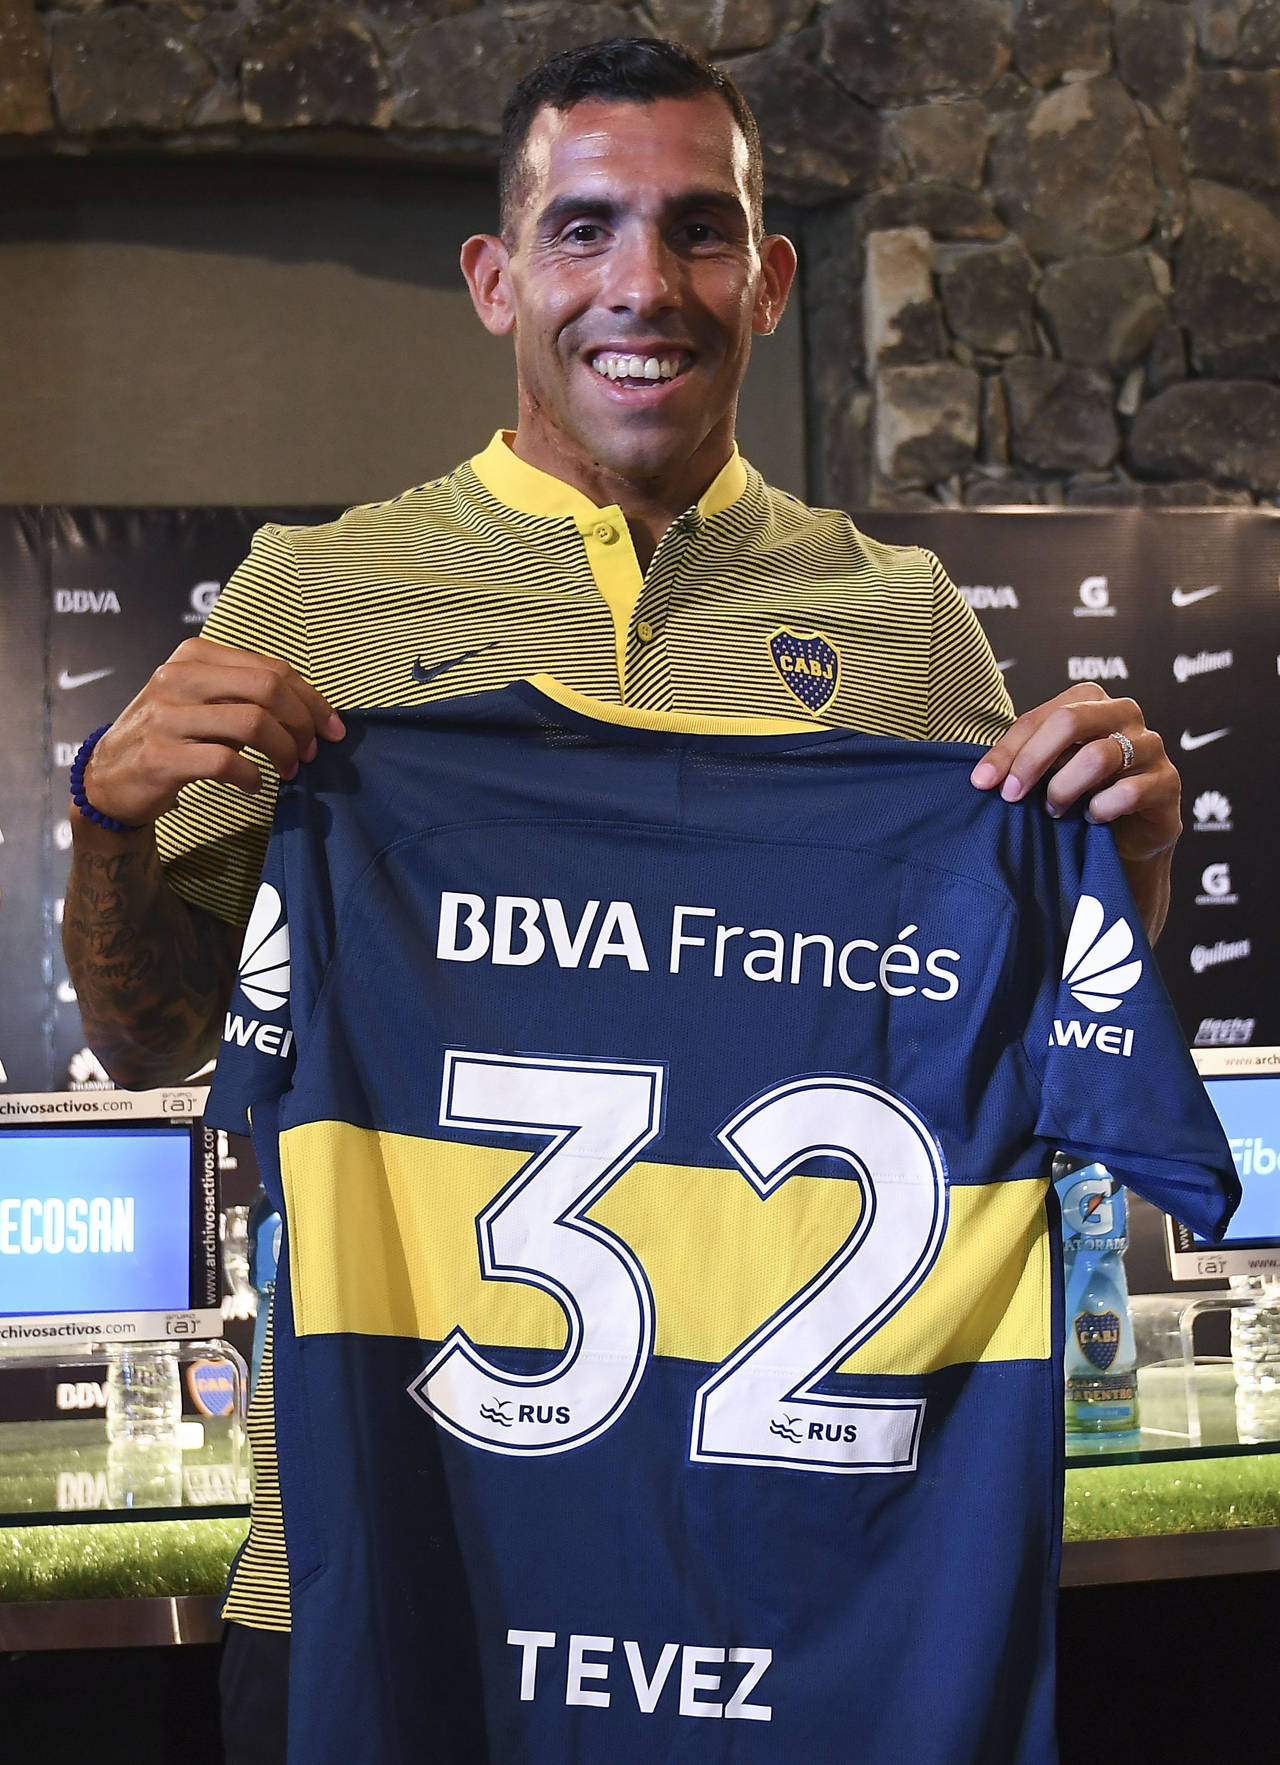 El delantero de Boca Juniors Carlos Tévez posa con la camiseta del equipo, durante su presentación en Los Cardales. Tevez fue presentado ayer como fichaje del Boca Juniors proveniente del Shanghái Shenhua chino. (EFE)